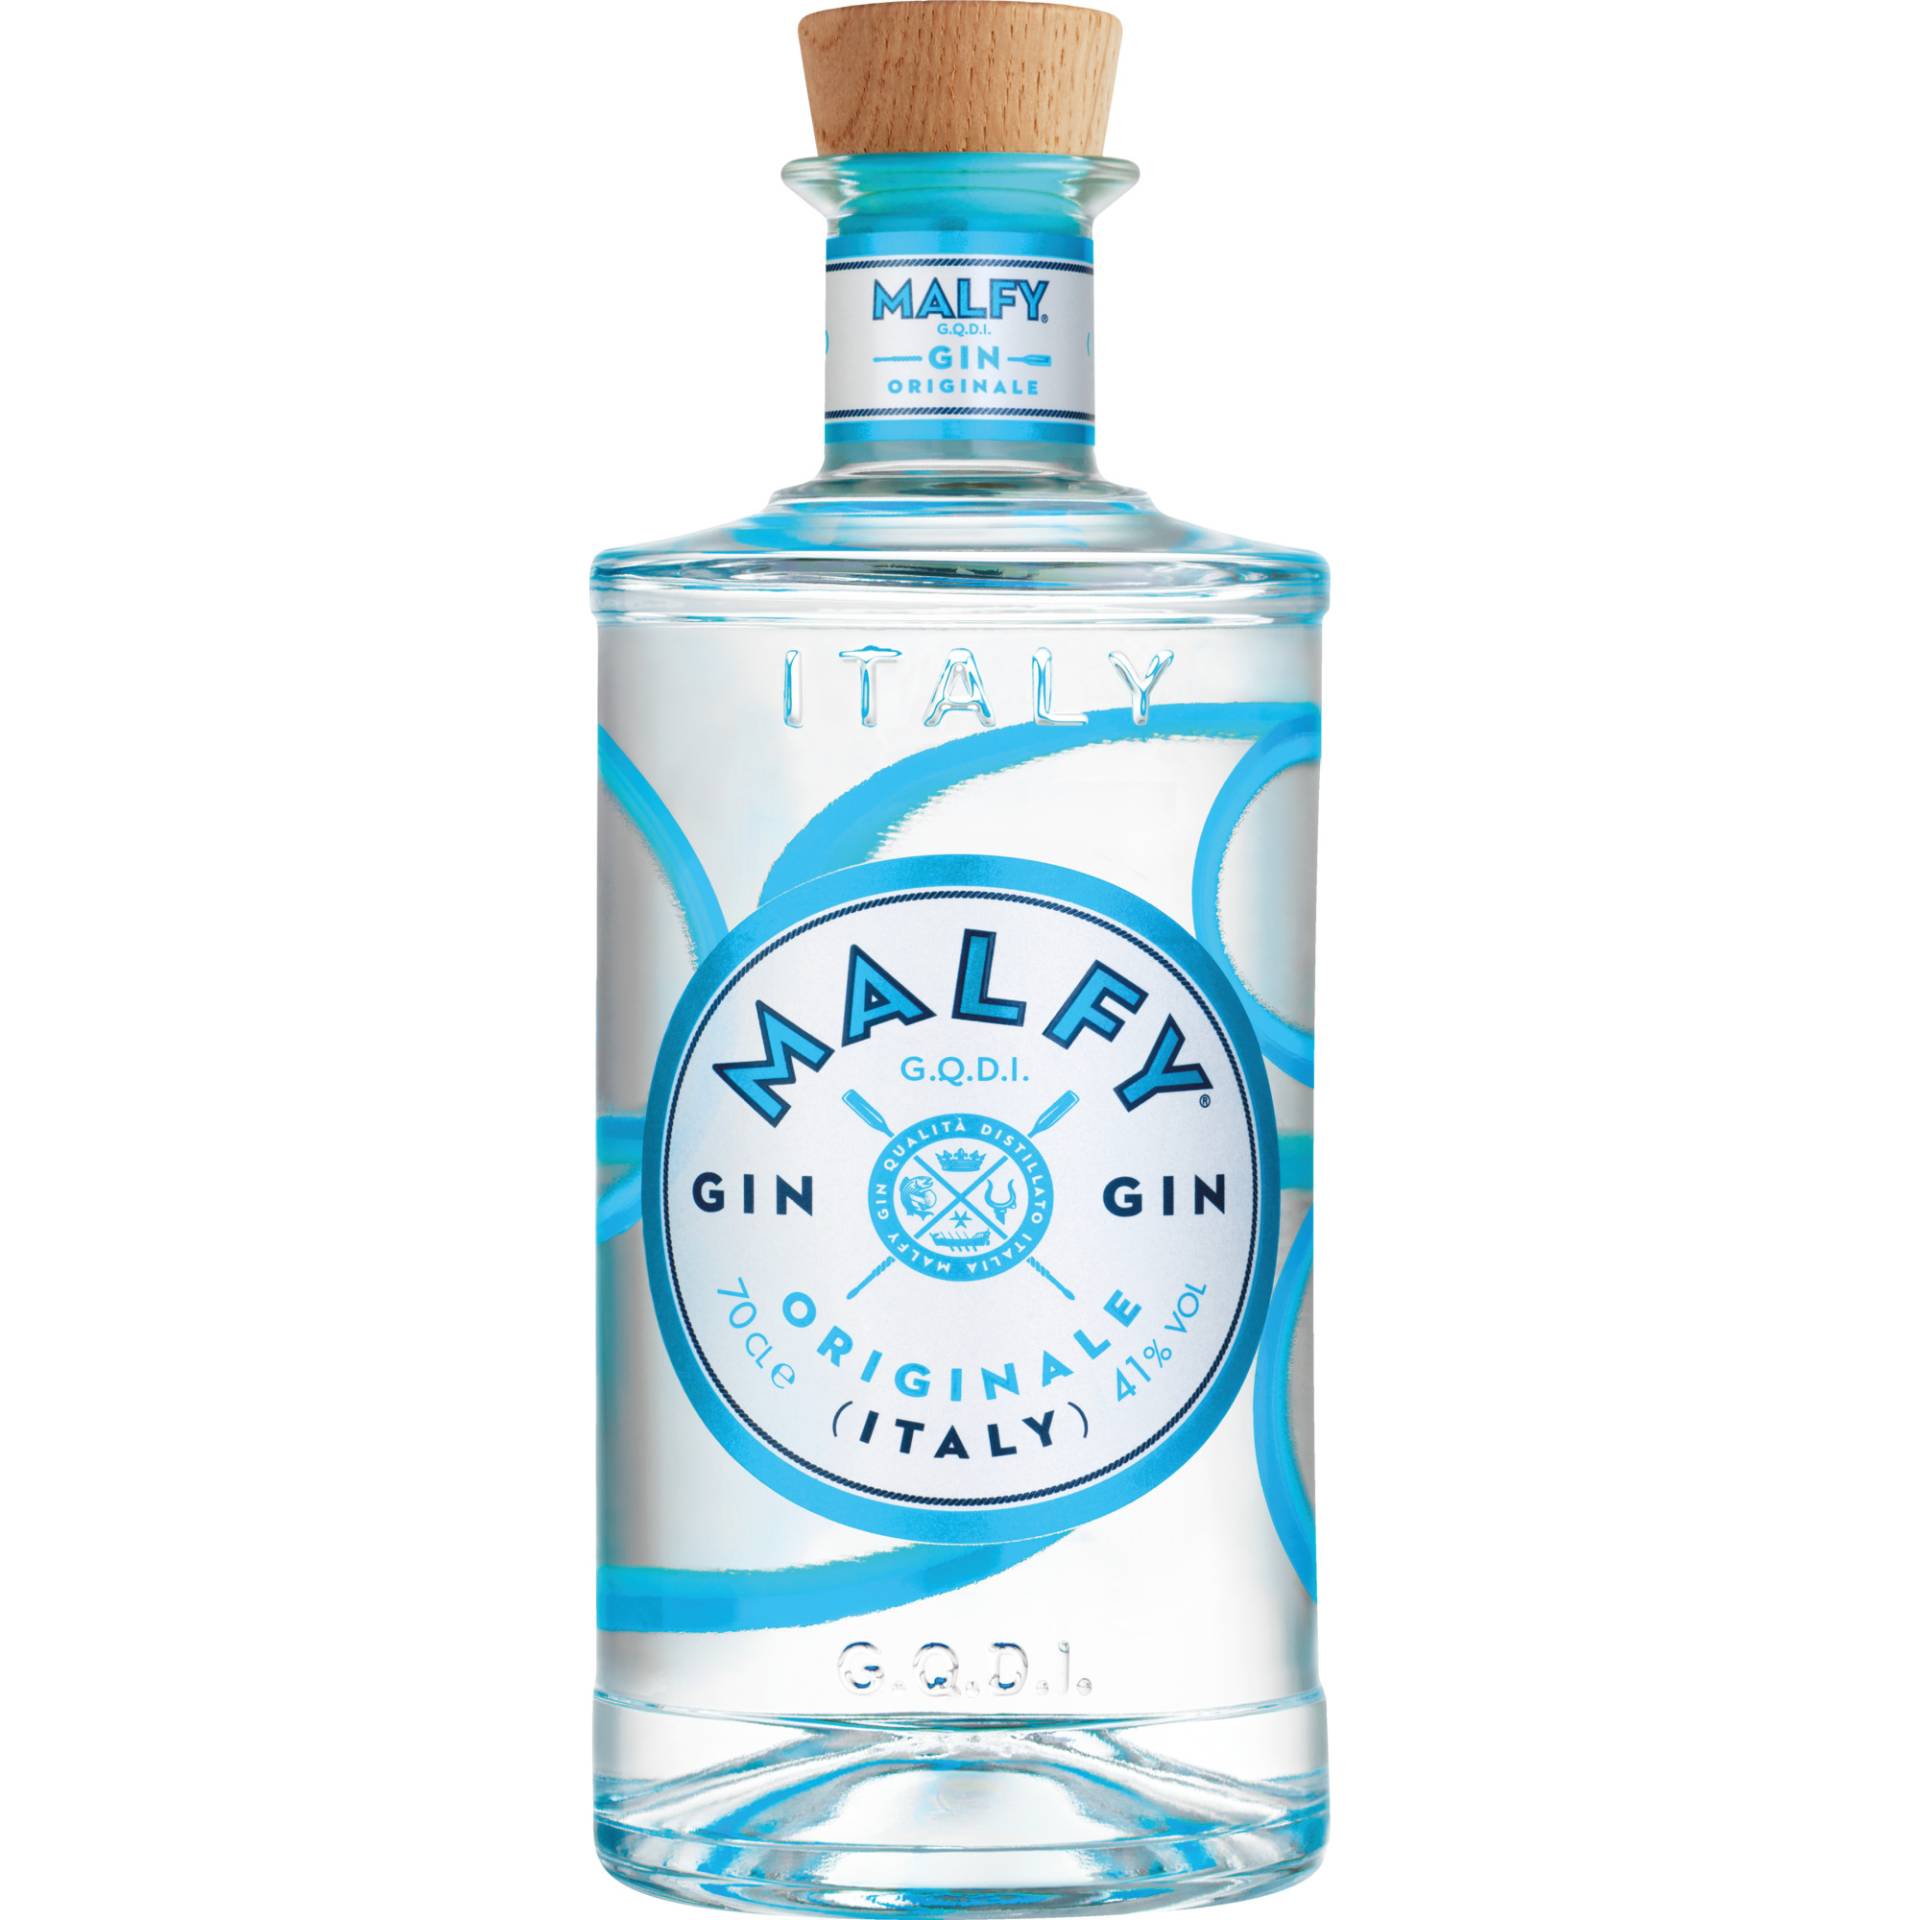 Malfy Gin Originale, Italien, 0,7 L, 41% Vol., Spirituosen von Torino Distillati S.P.A., 10024 Moncalieri (Turin), Italia